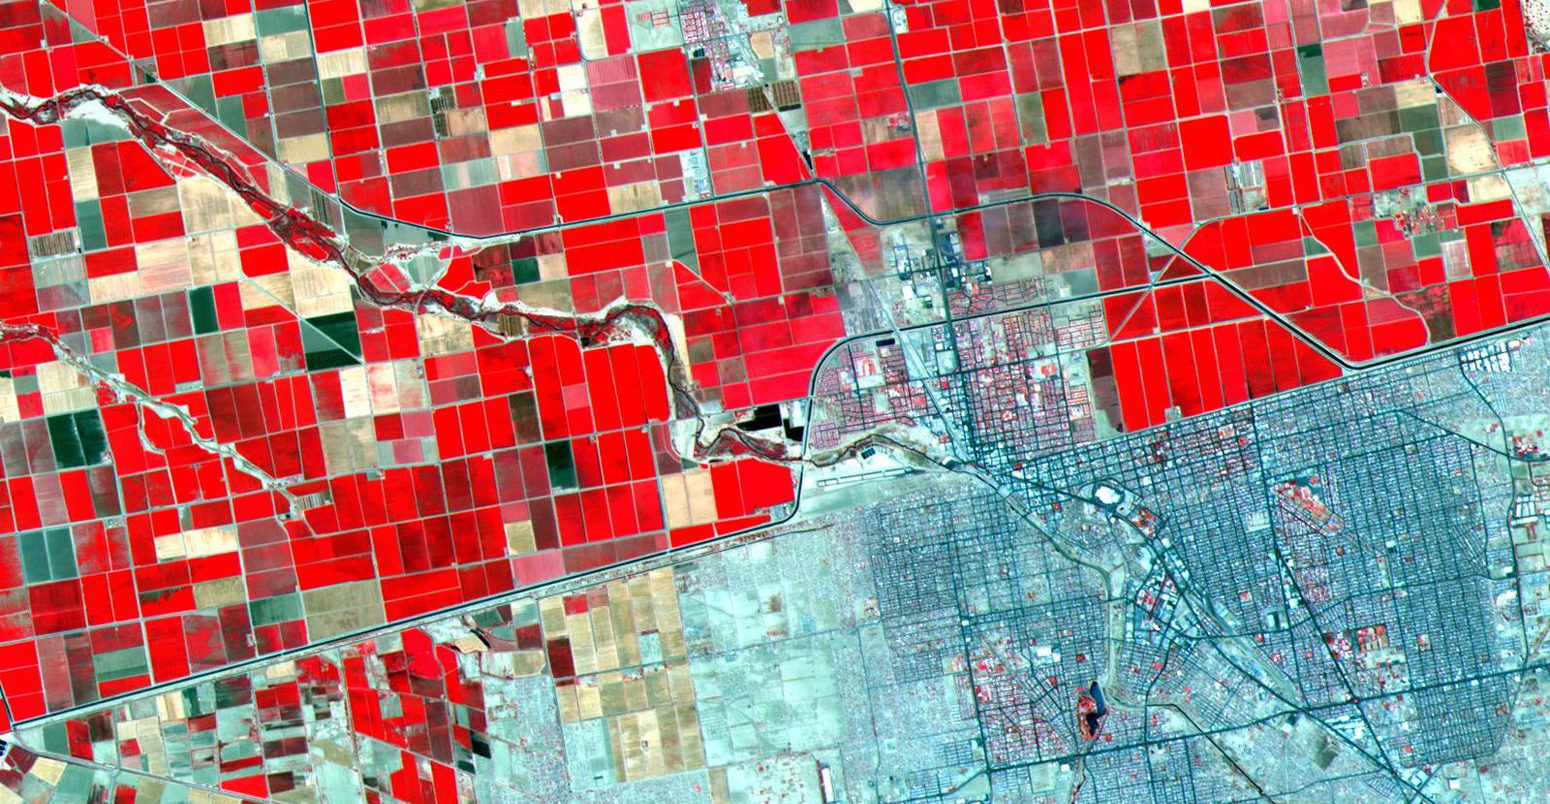 土地利用模式的卫星图像显示了戏剧性的差异在美国-墨西哥边境。郁郁葱葱的,定期网格农田美方与贫瘠的土地。